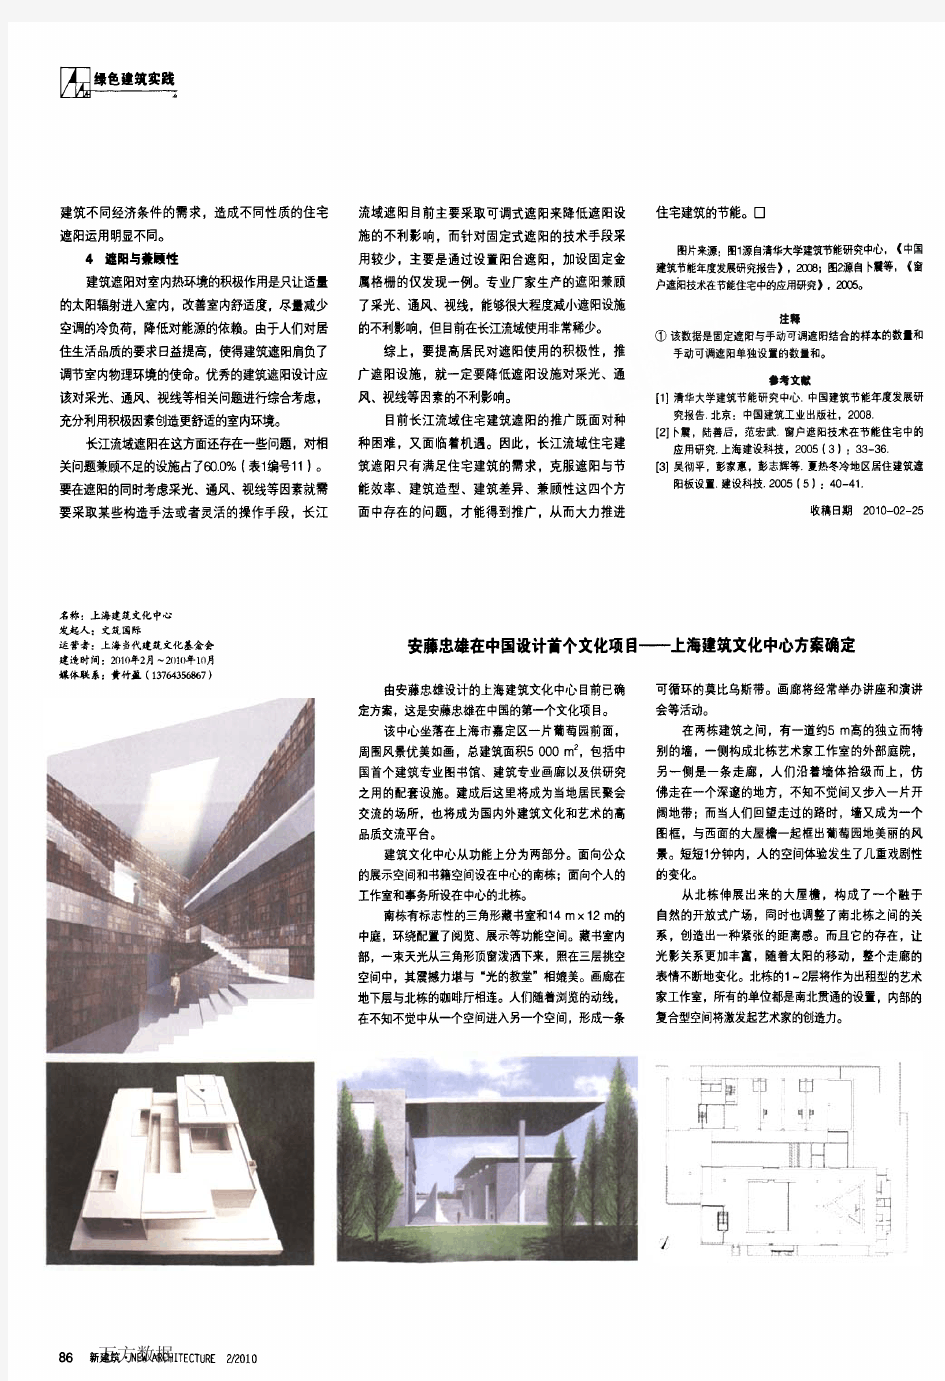 安藤忠雄在中国设计首个文化项目——上海建筑文化中心方案确定